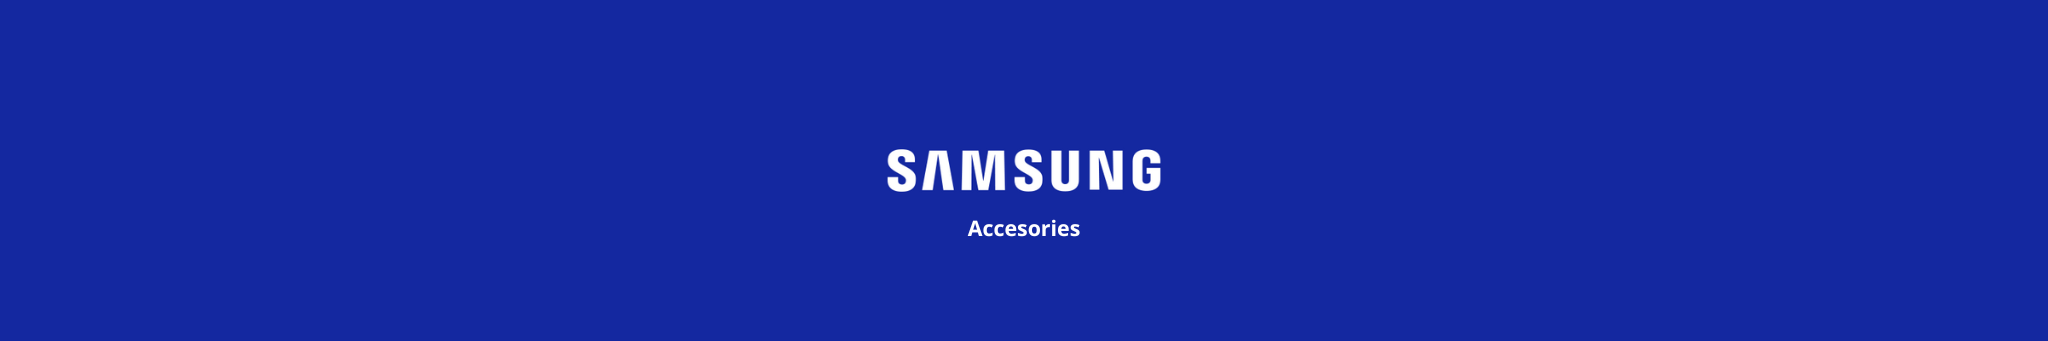 Coques de Protection Samsung pour Tablettes